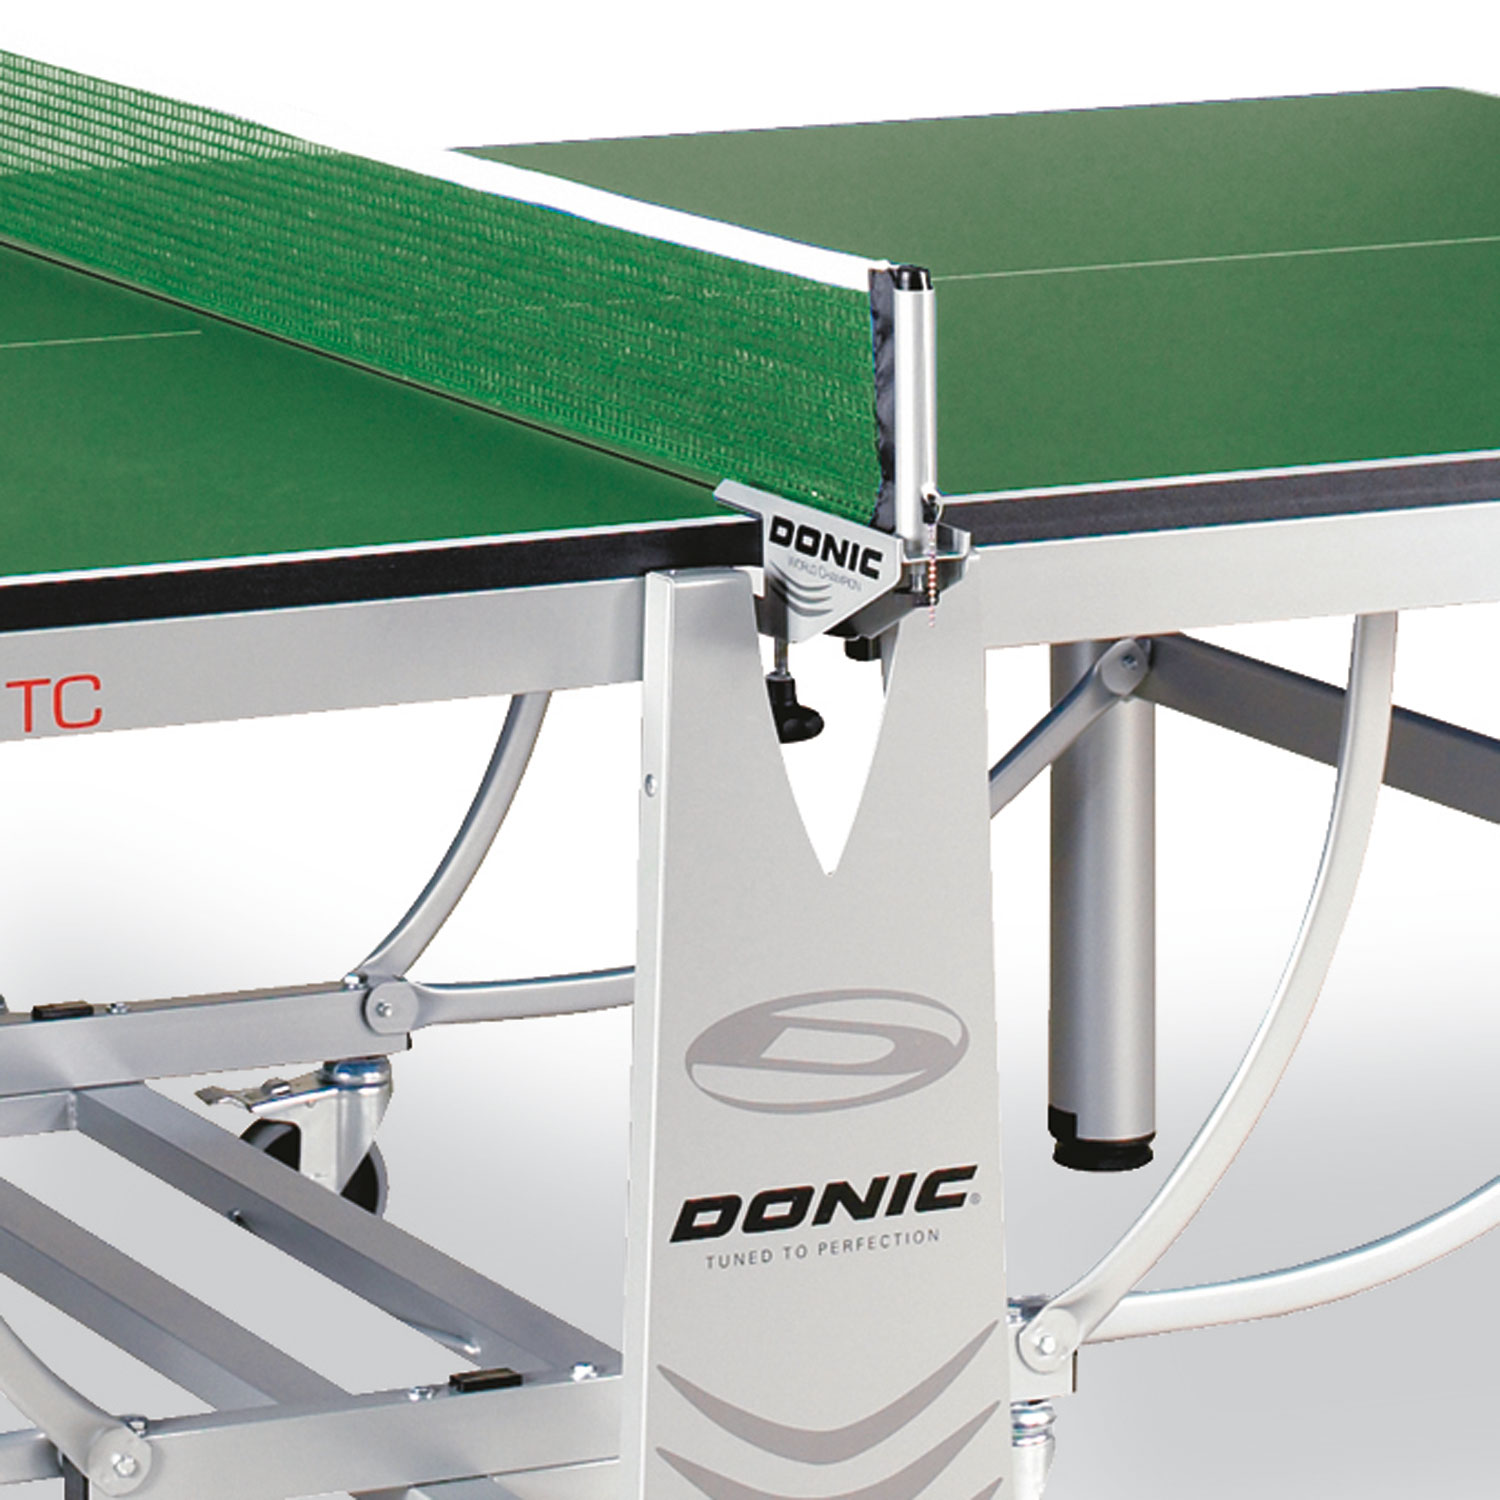 Профессиональный теннисный стол Donic World Champion TC зеленый DR-18